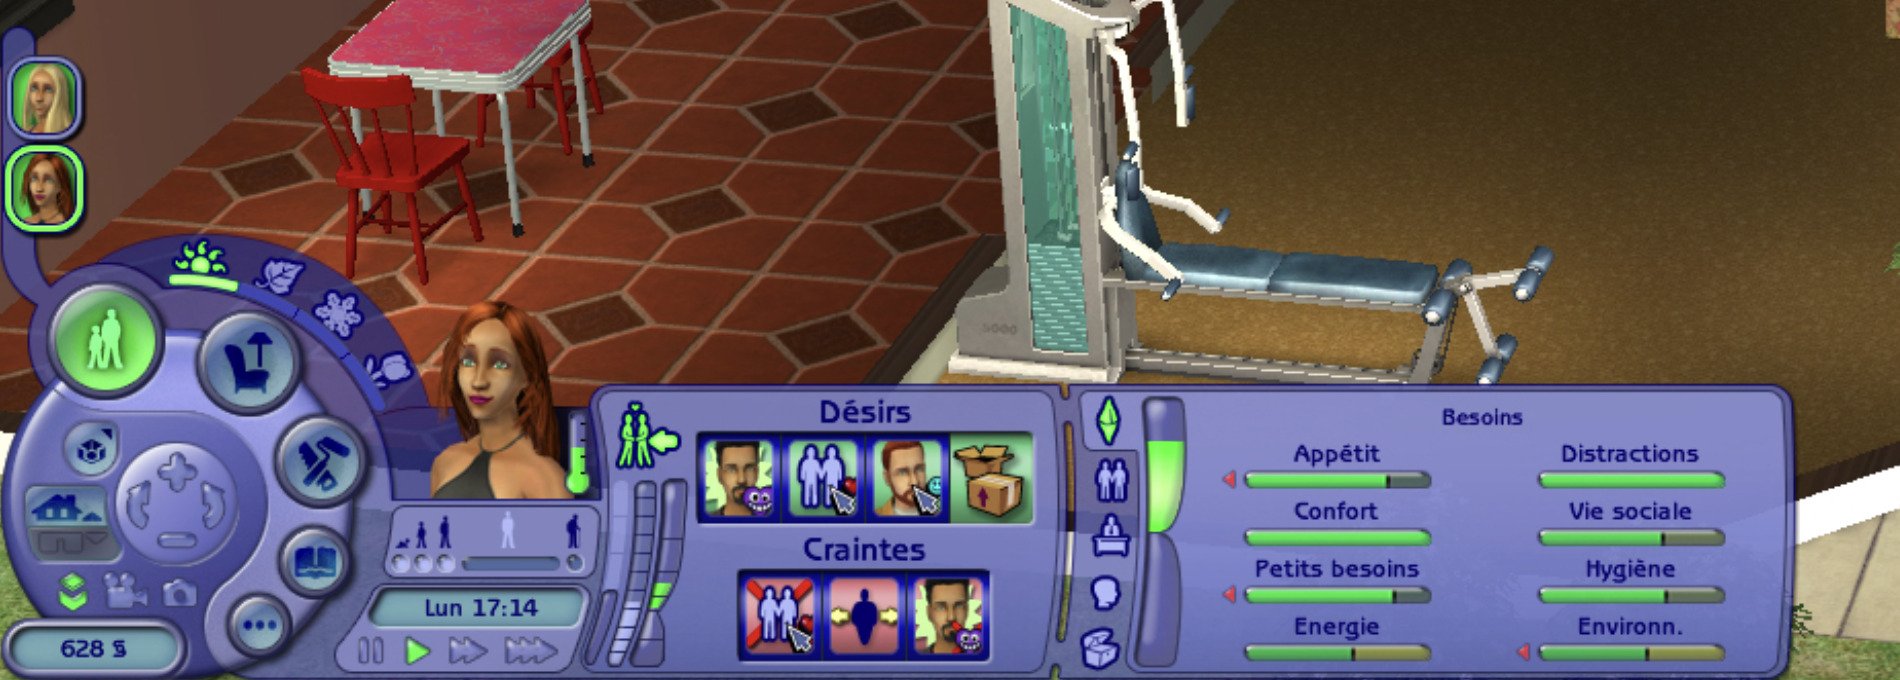 Die Bedürfnisse der Sims 2